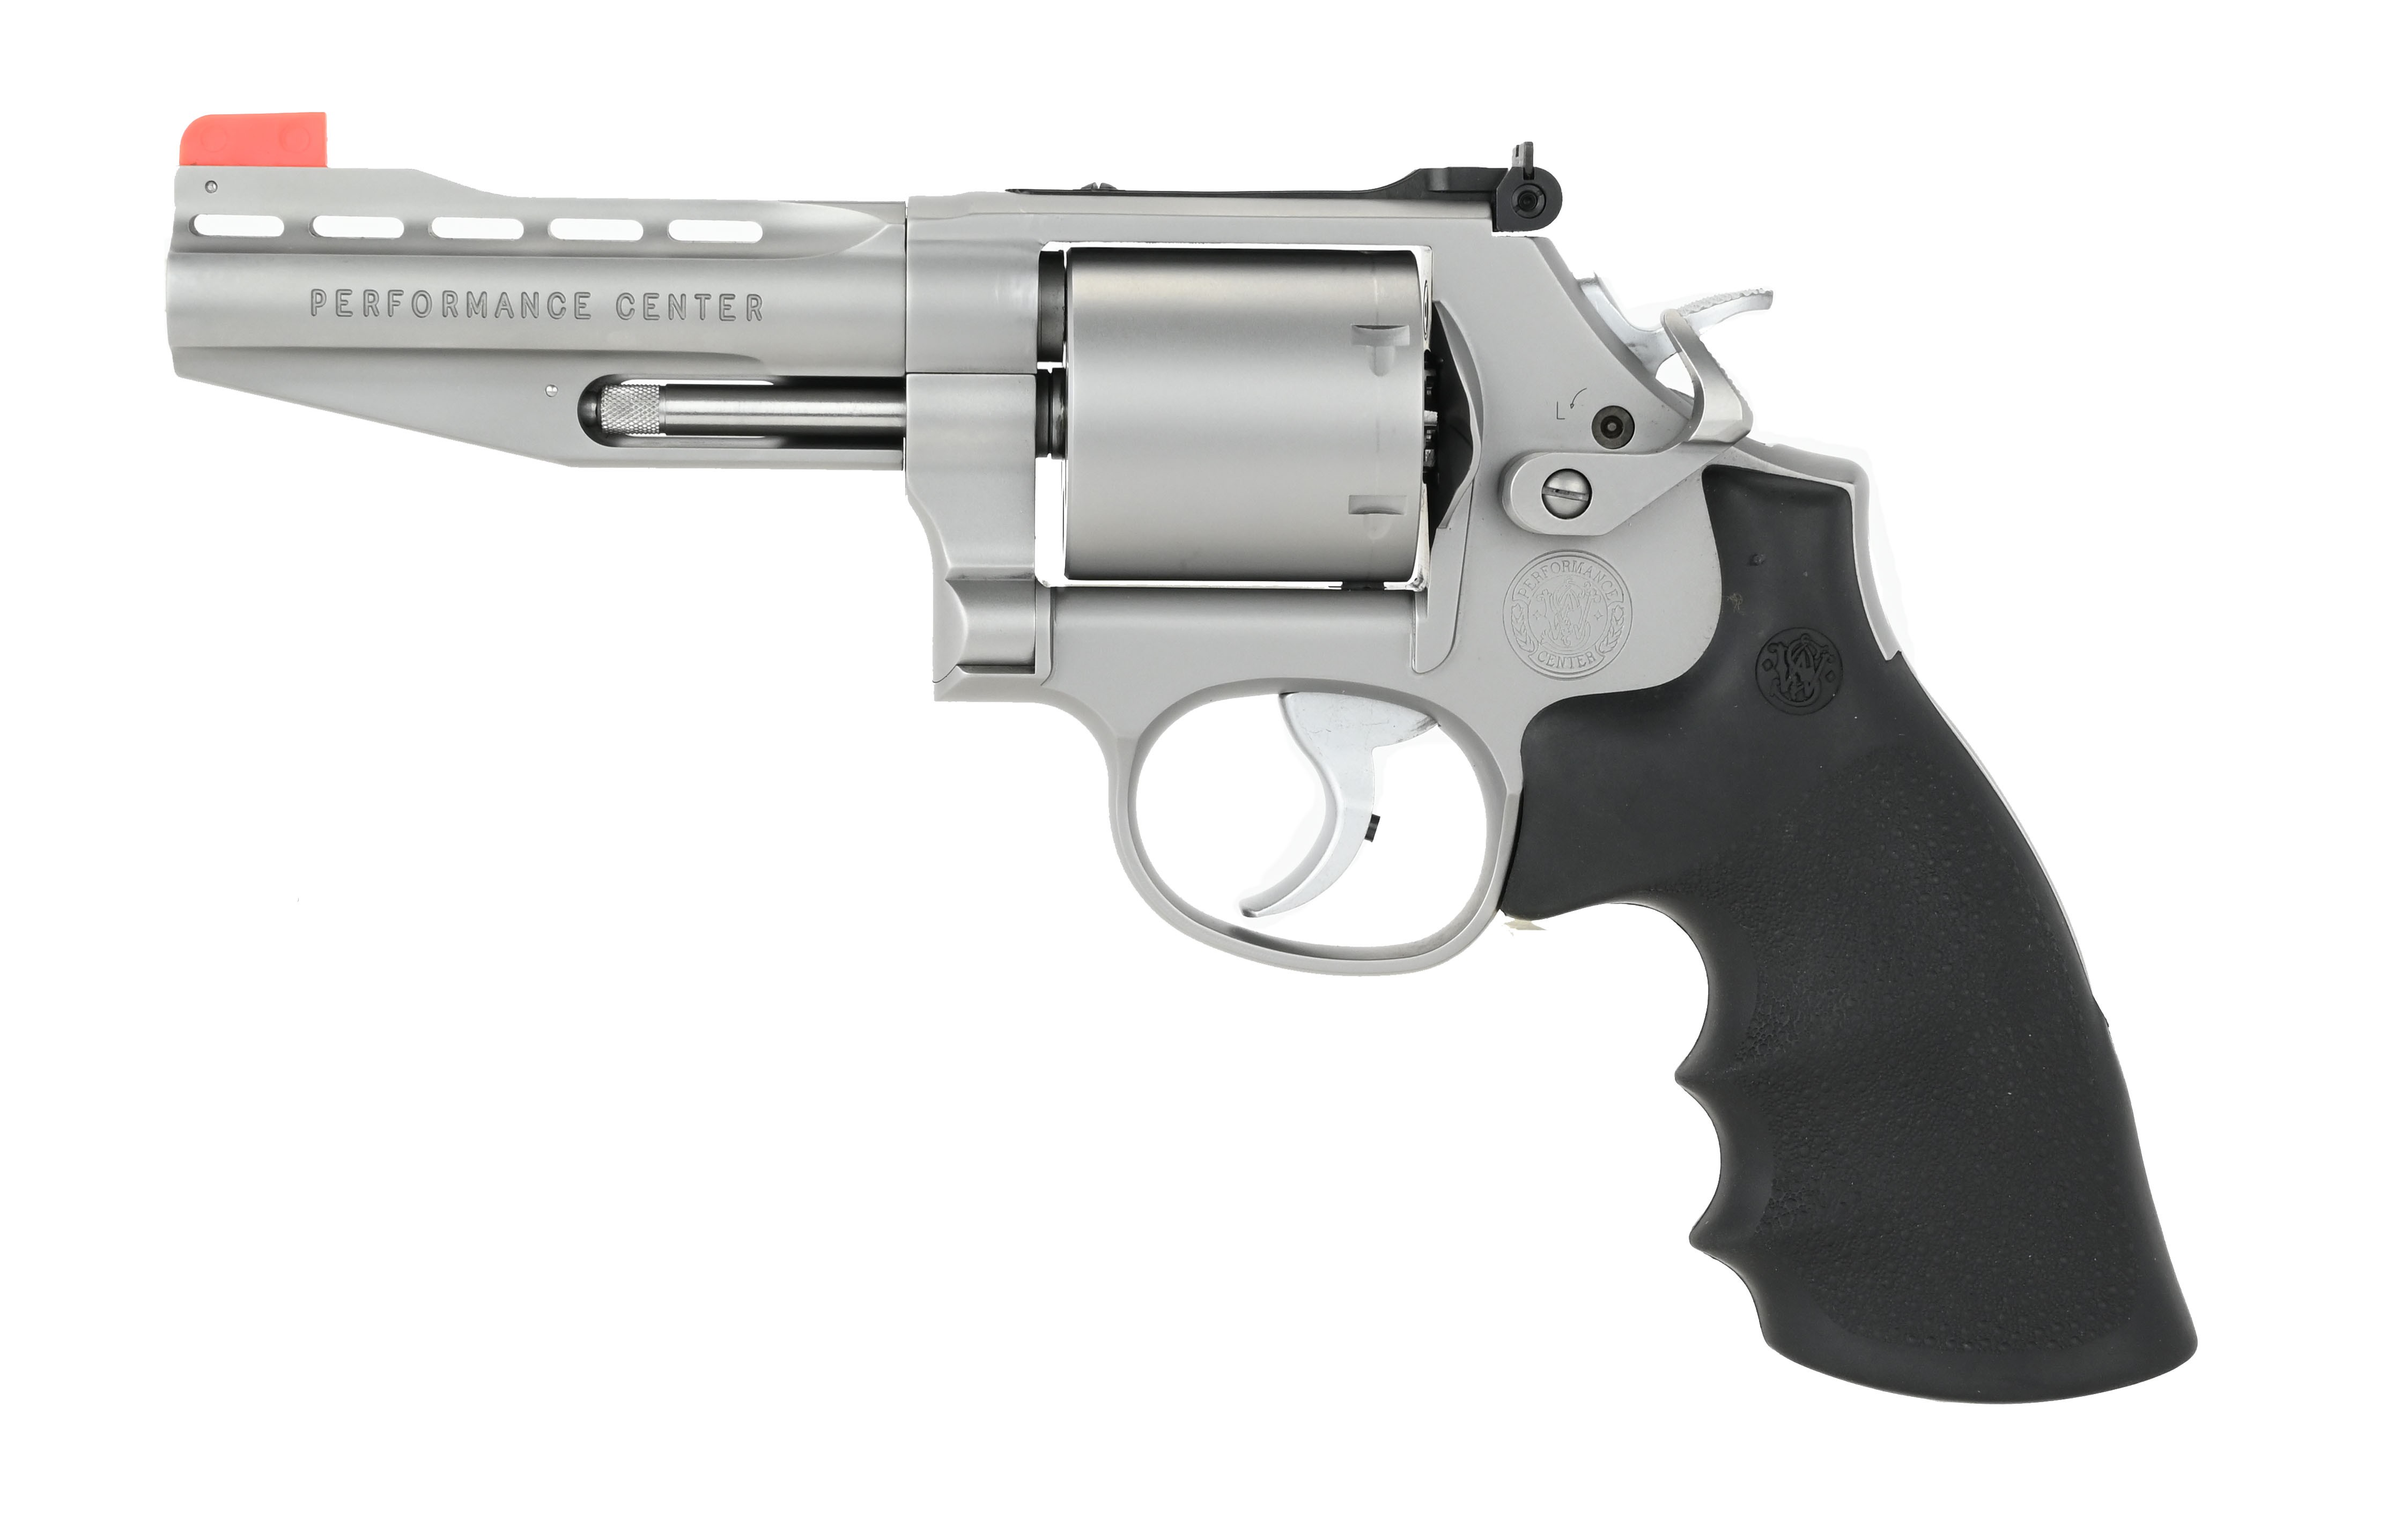 Smith & Wesson 686-6 Performance Center .357 Magnum caliber revolver f